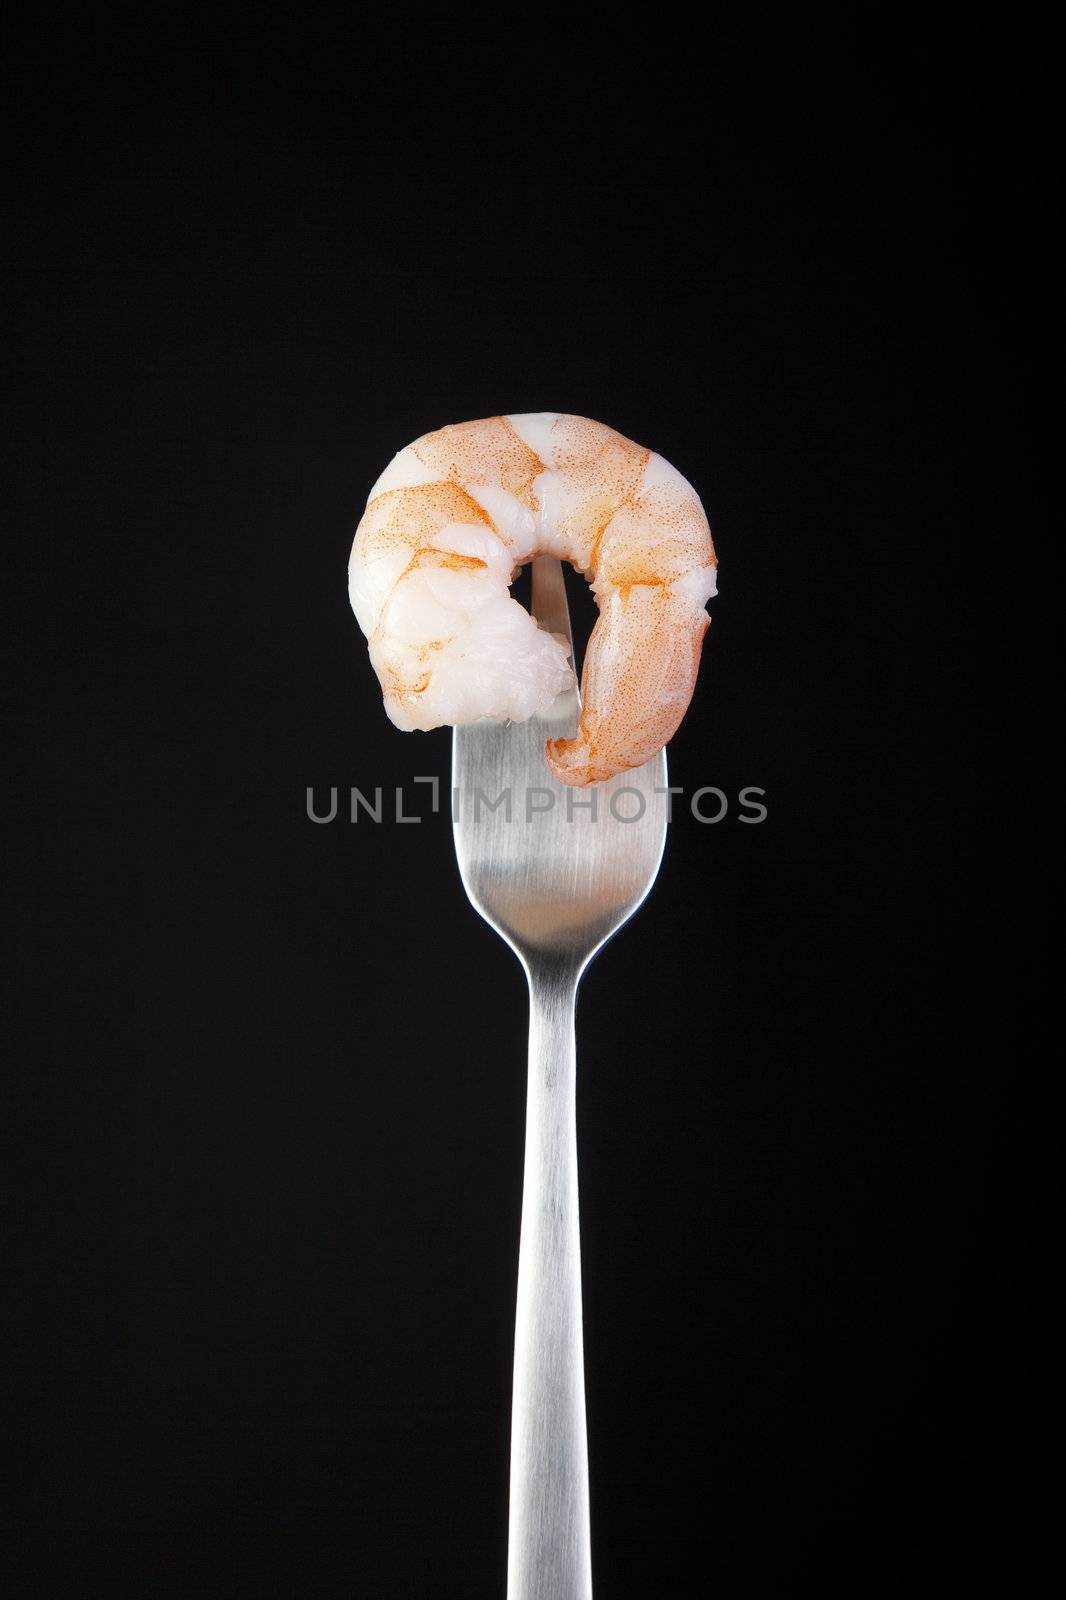 Cocktail shrimp on fork with black background.